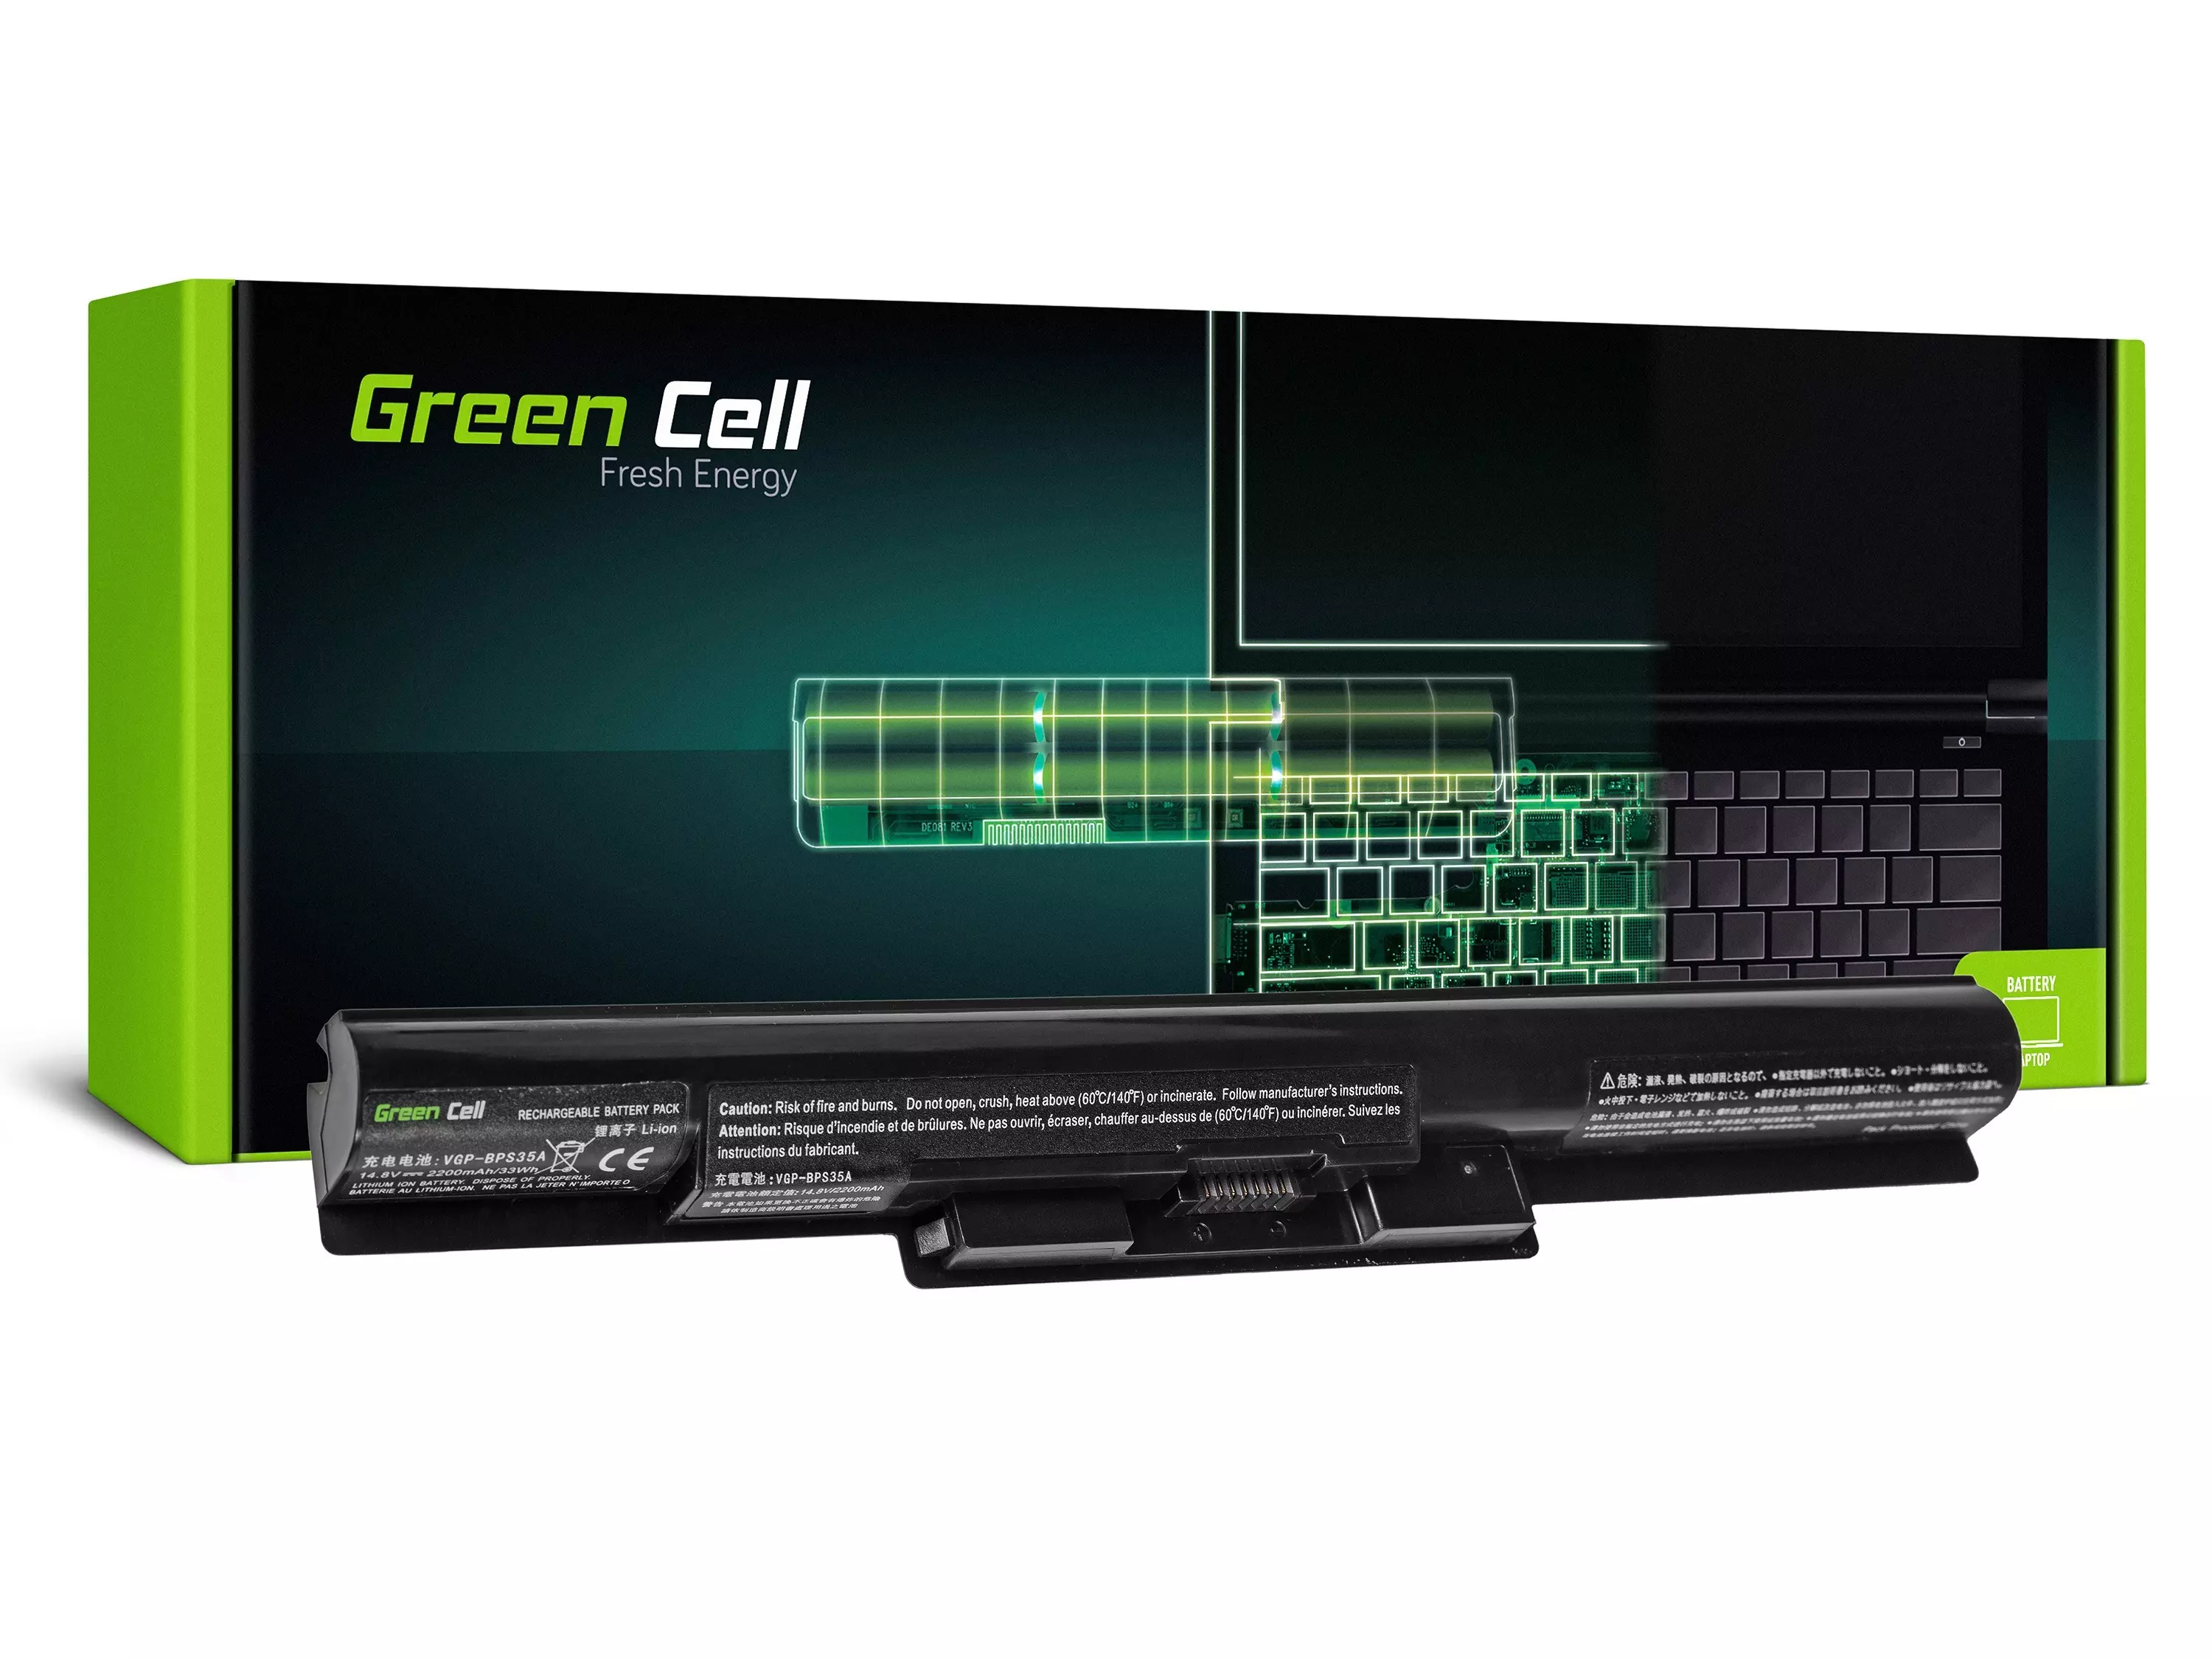 Green Cell Baterie pentru laptop Sony VAIO SVF14 SVF15 Fit 14E 15E